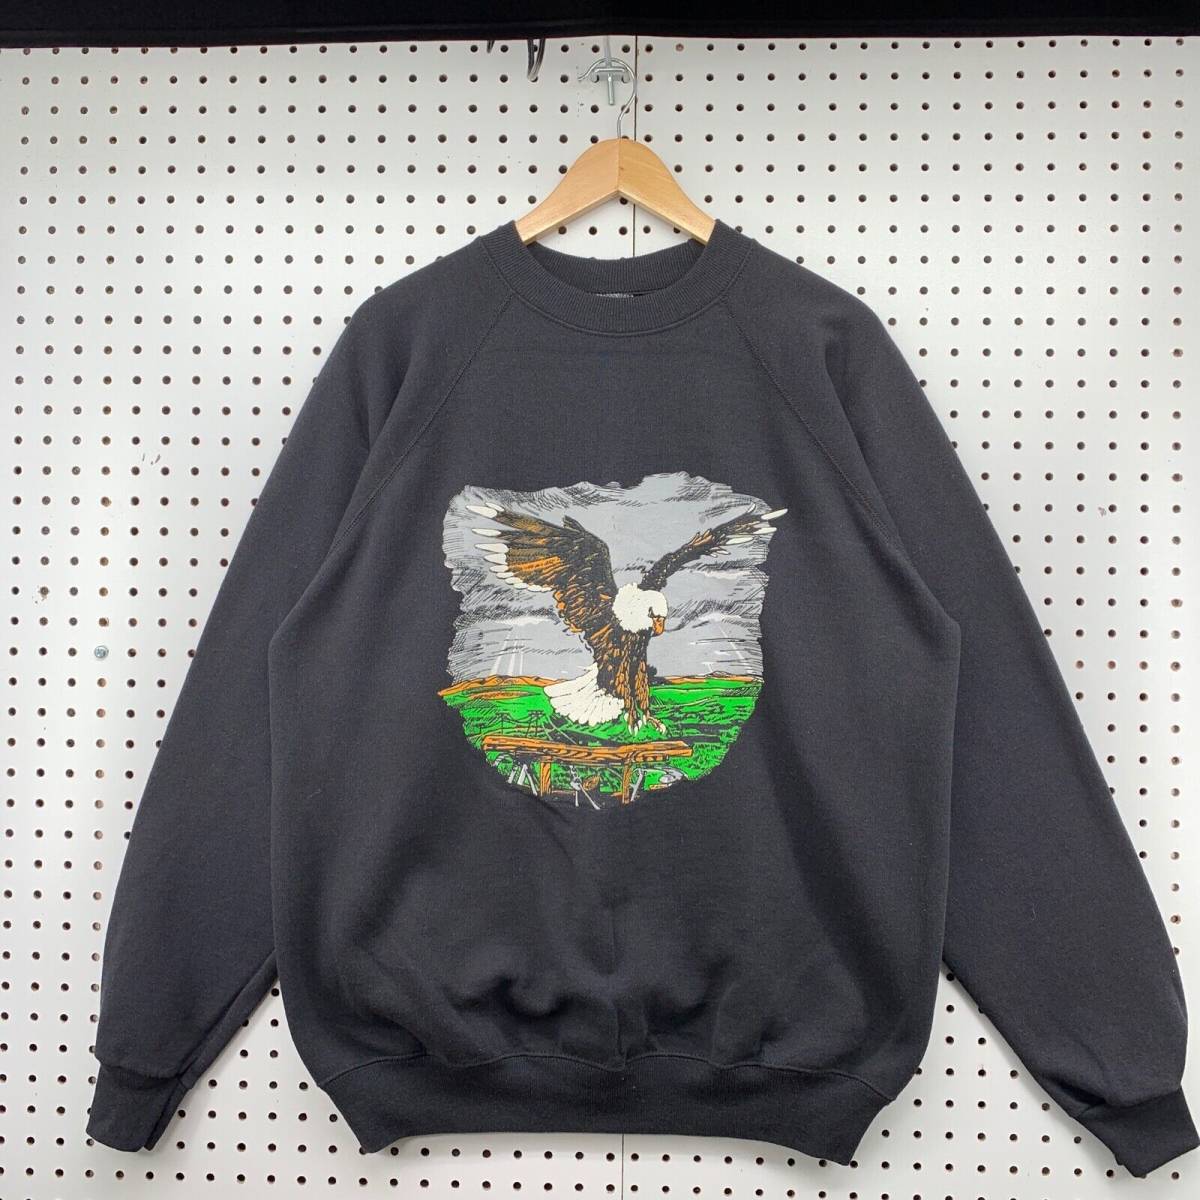 Vintage Bald Eagle Crew Neck Sweatshirt XL Long Sleeve Black Pullover VTG 90s 海外 即決